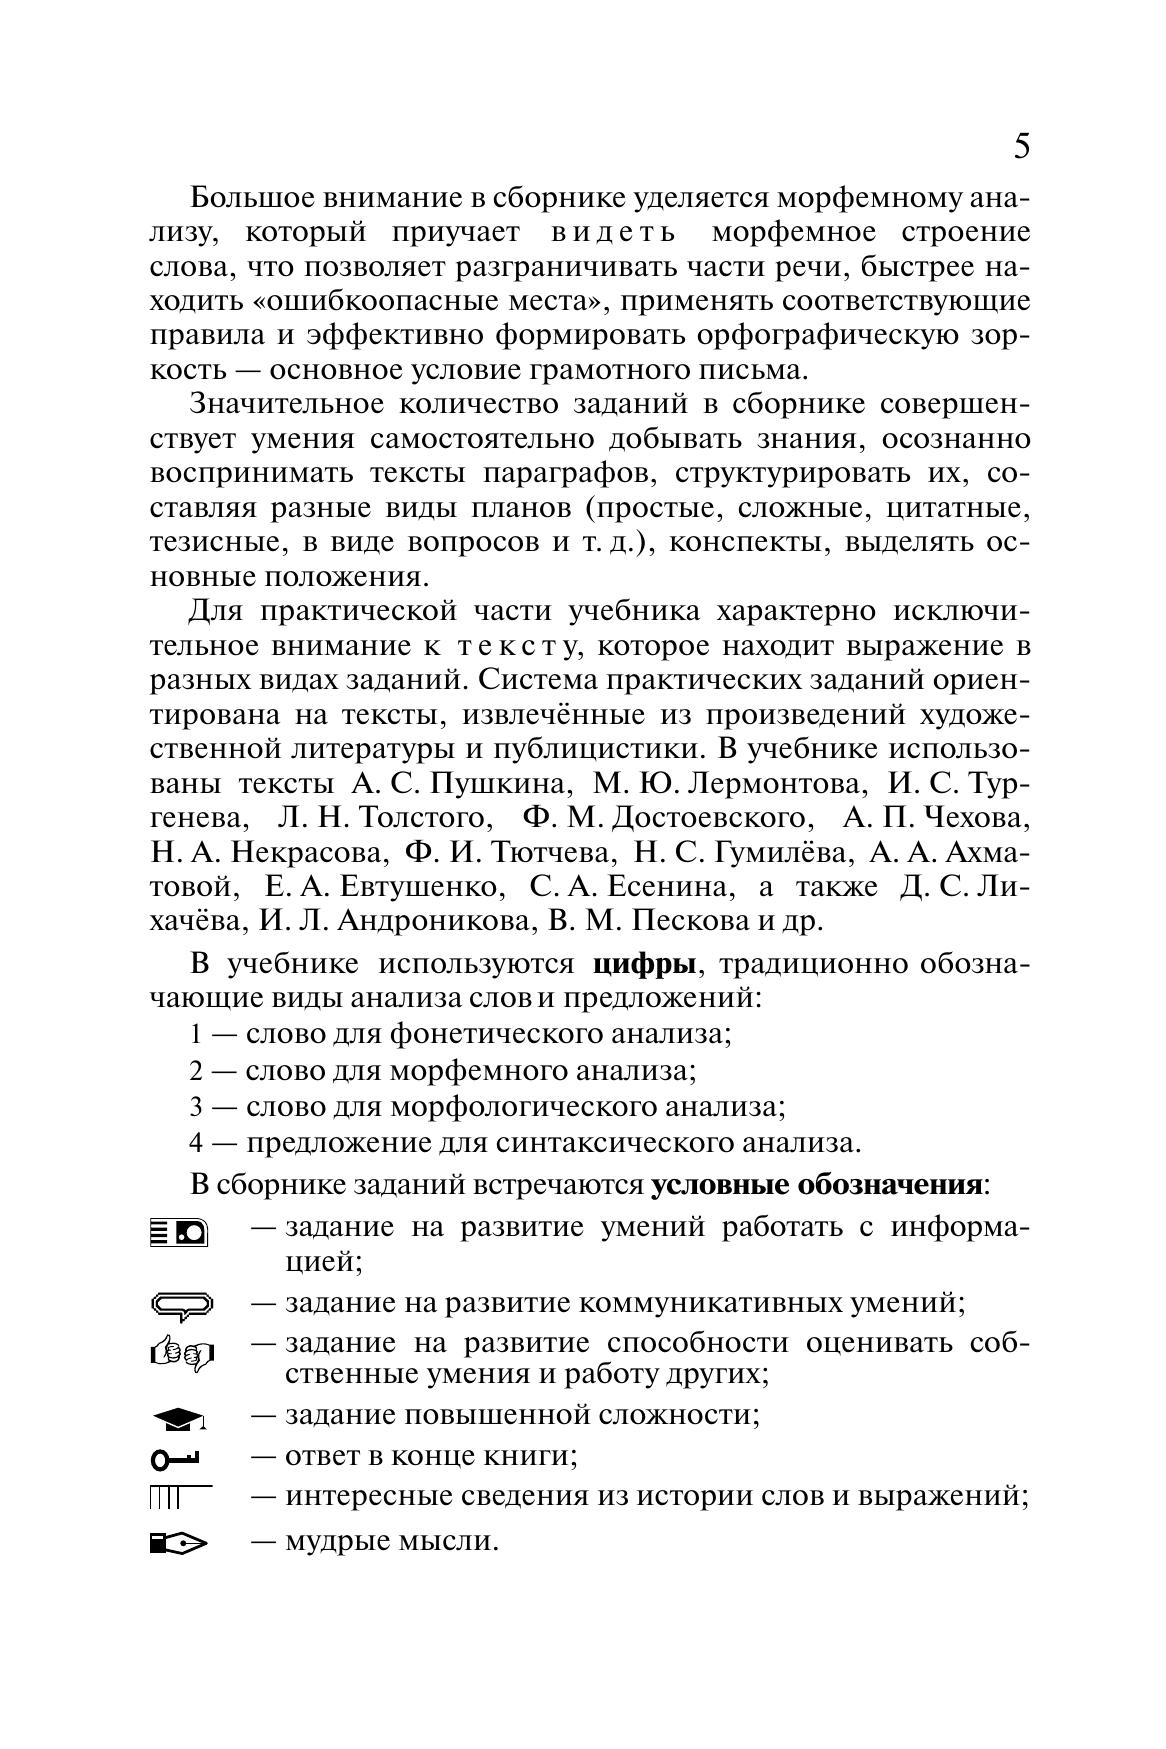 Русский язык. 10-11 классы. Учебник. Углублённый уровень 11